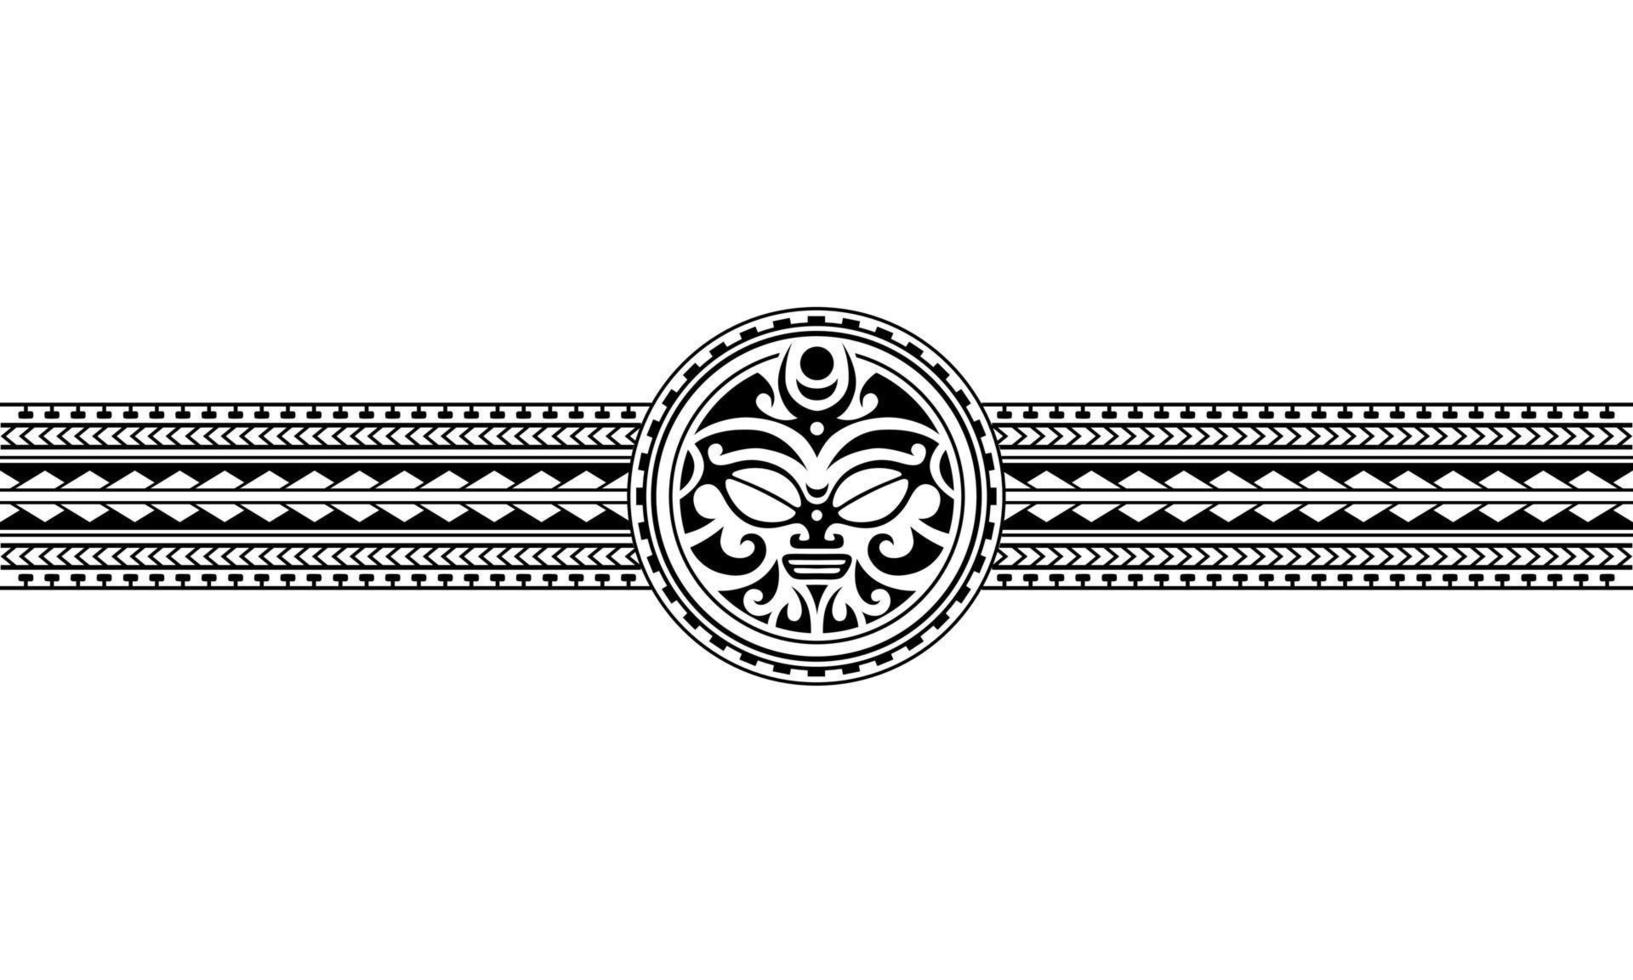 maori polynesisk tatuering gränsen tribal ärm mönster vektor. samoansk armbandstatuering för arm eller fot. vektor